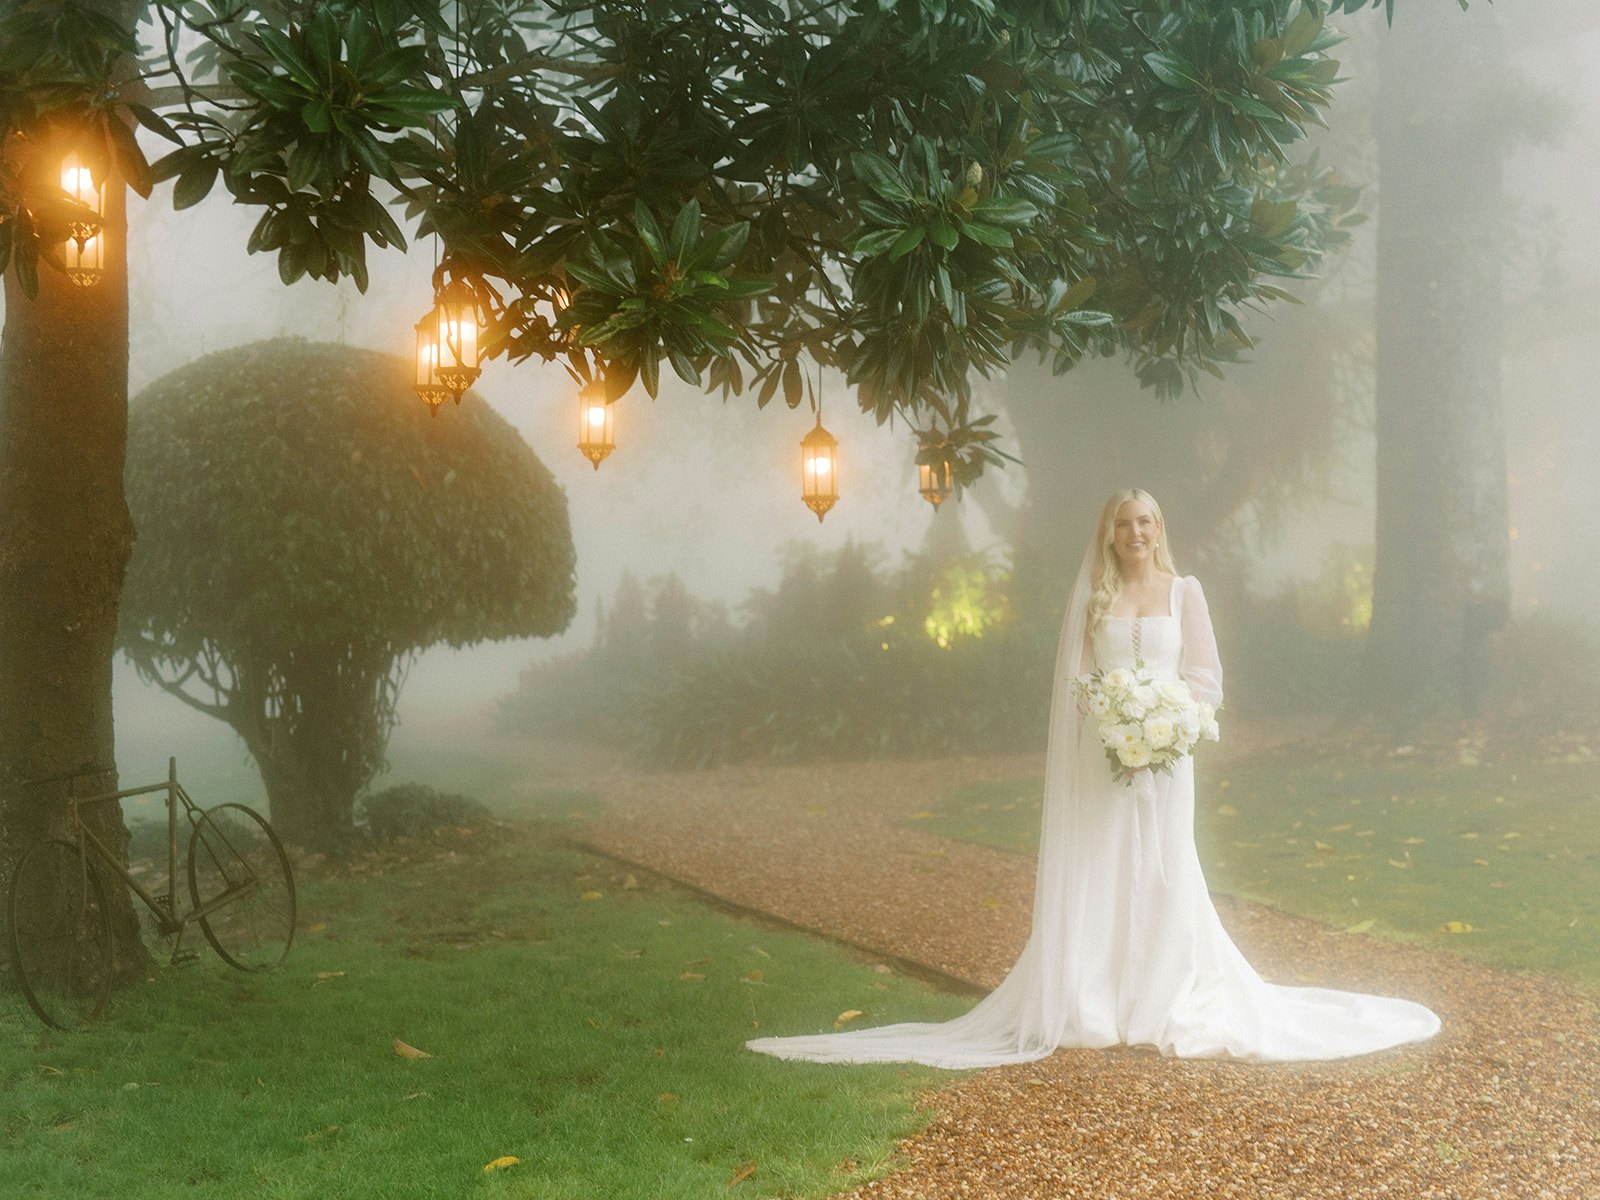 Bride standing under tree with lanterns